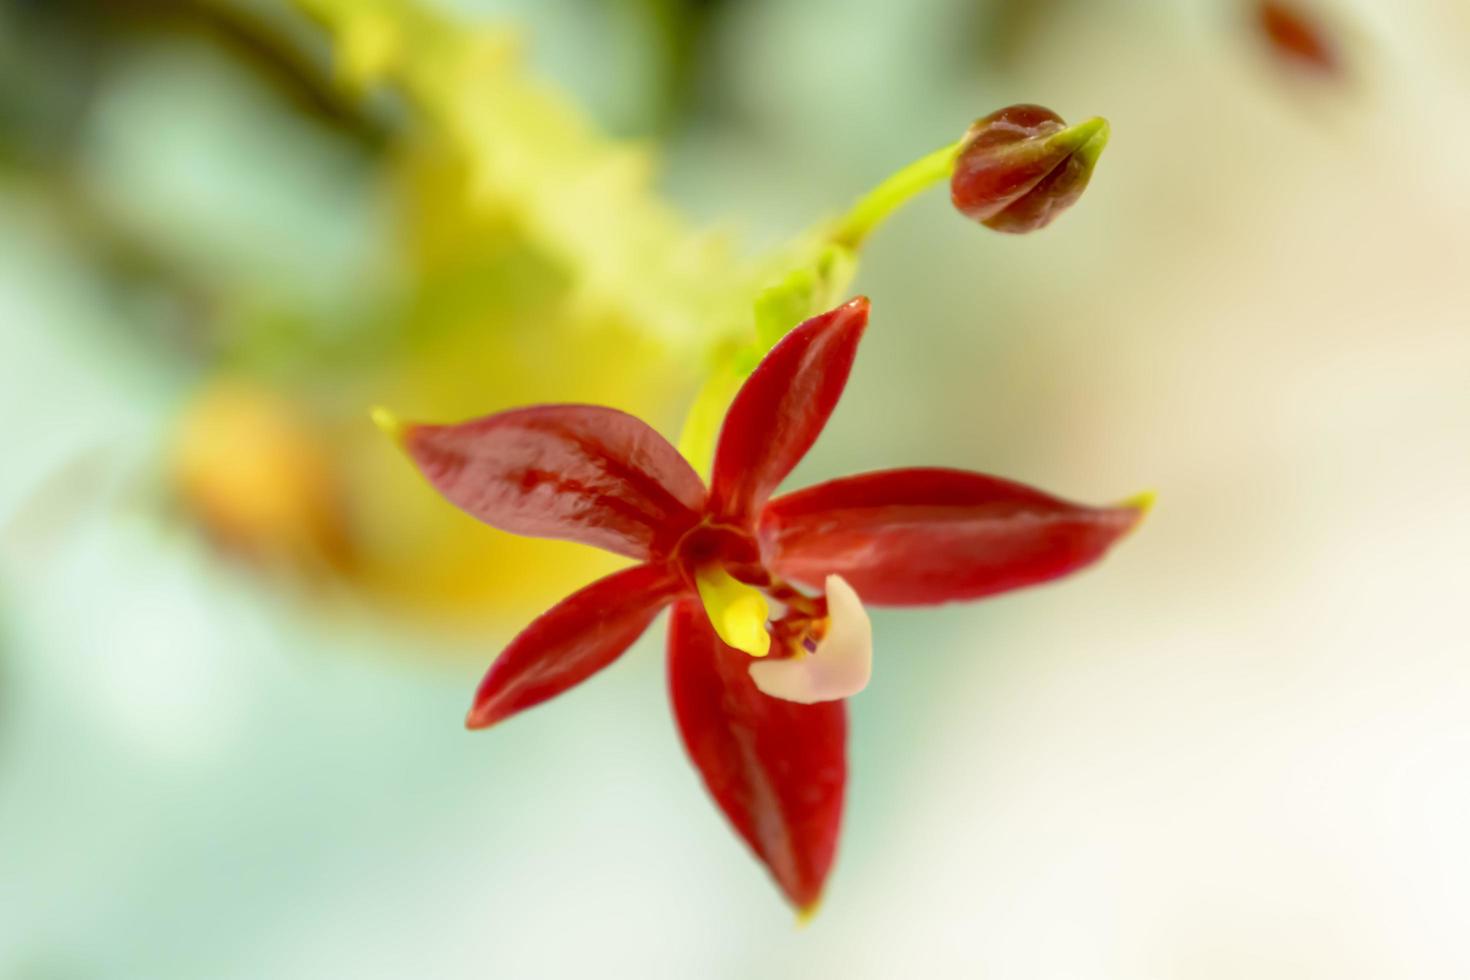 phalaenopsis cornu-cervi é uma espécie de orquídea que ocorre desde a indochina até a malesia ocidental e as filipinas. foto